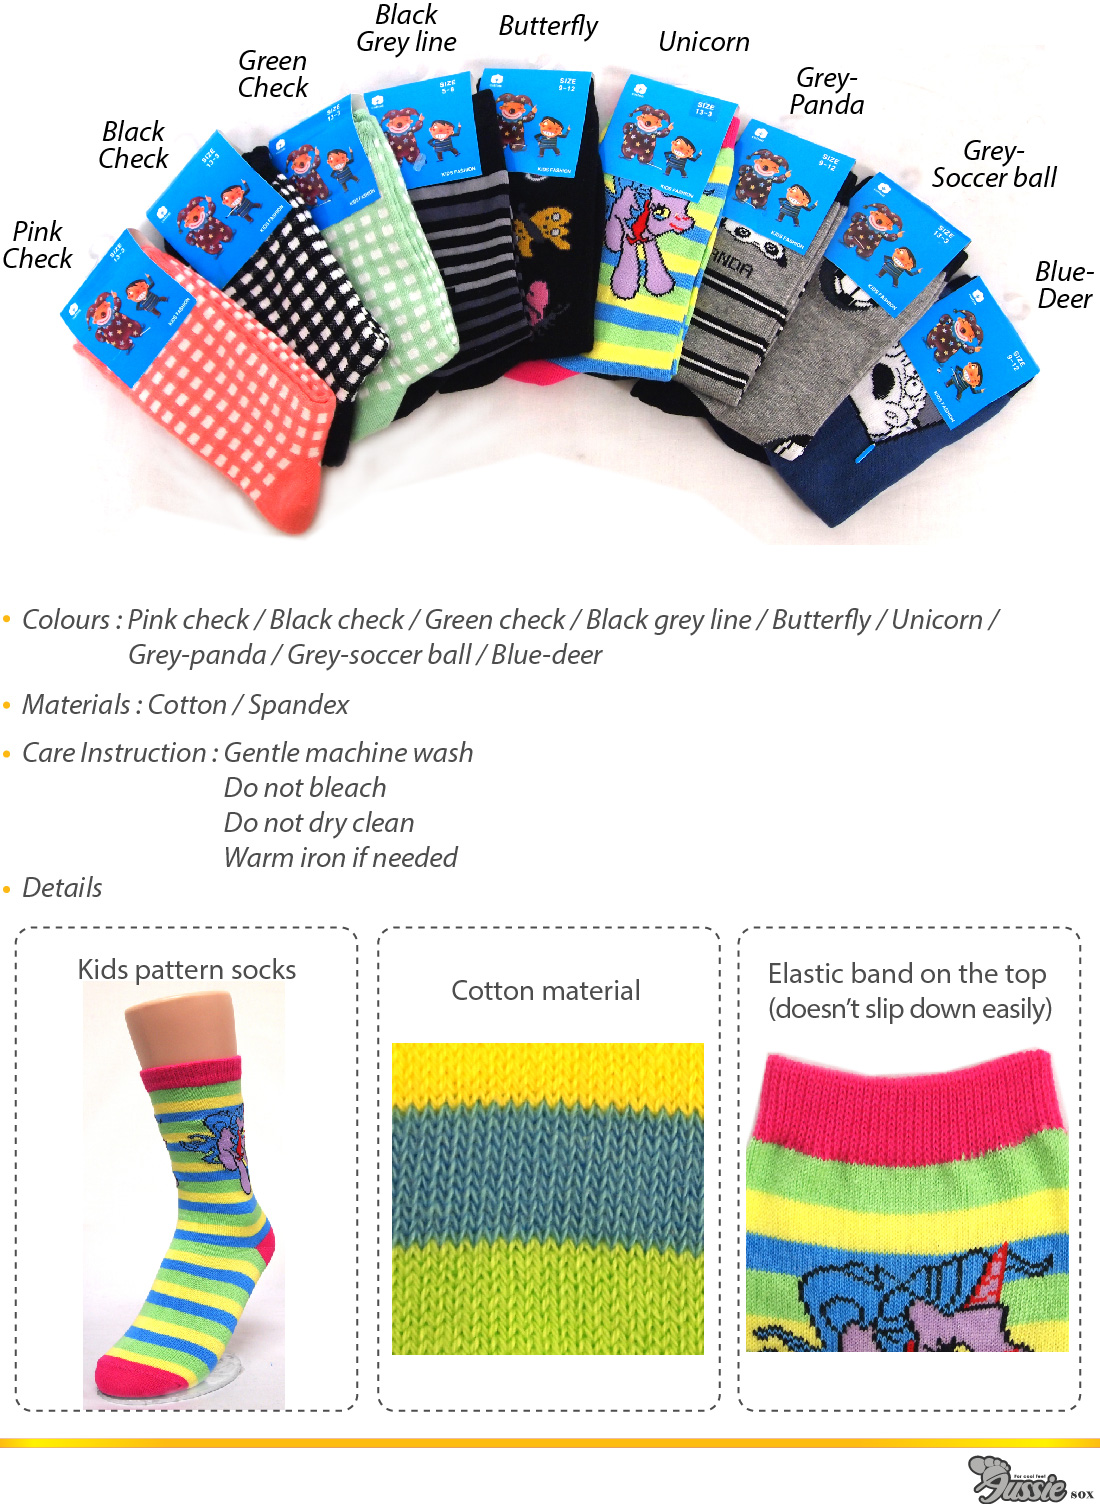 Kids Socks in a wide range of patterns